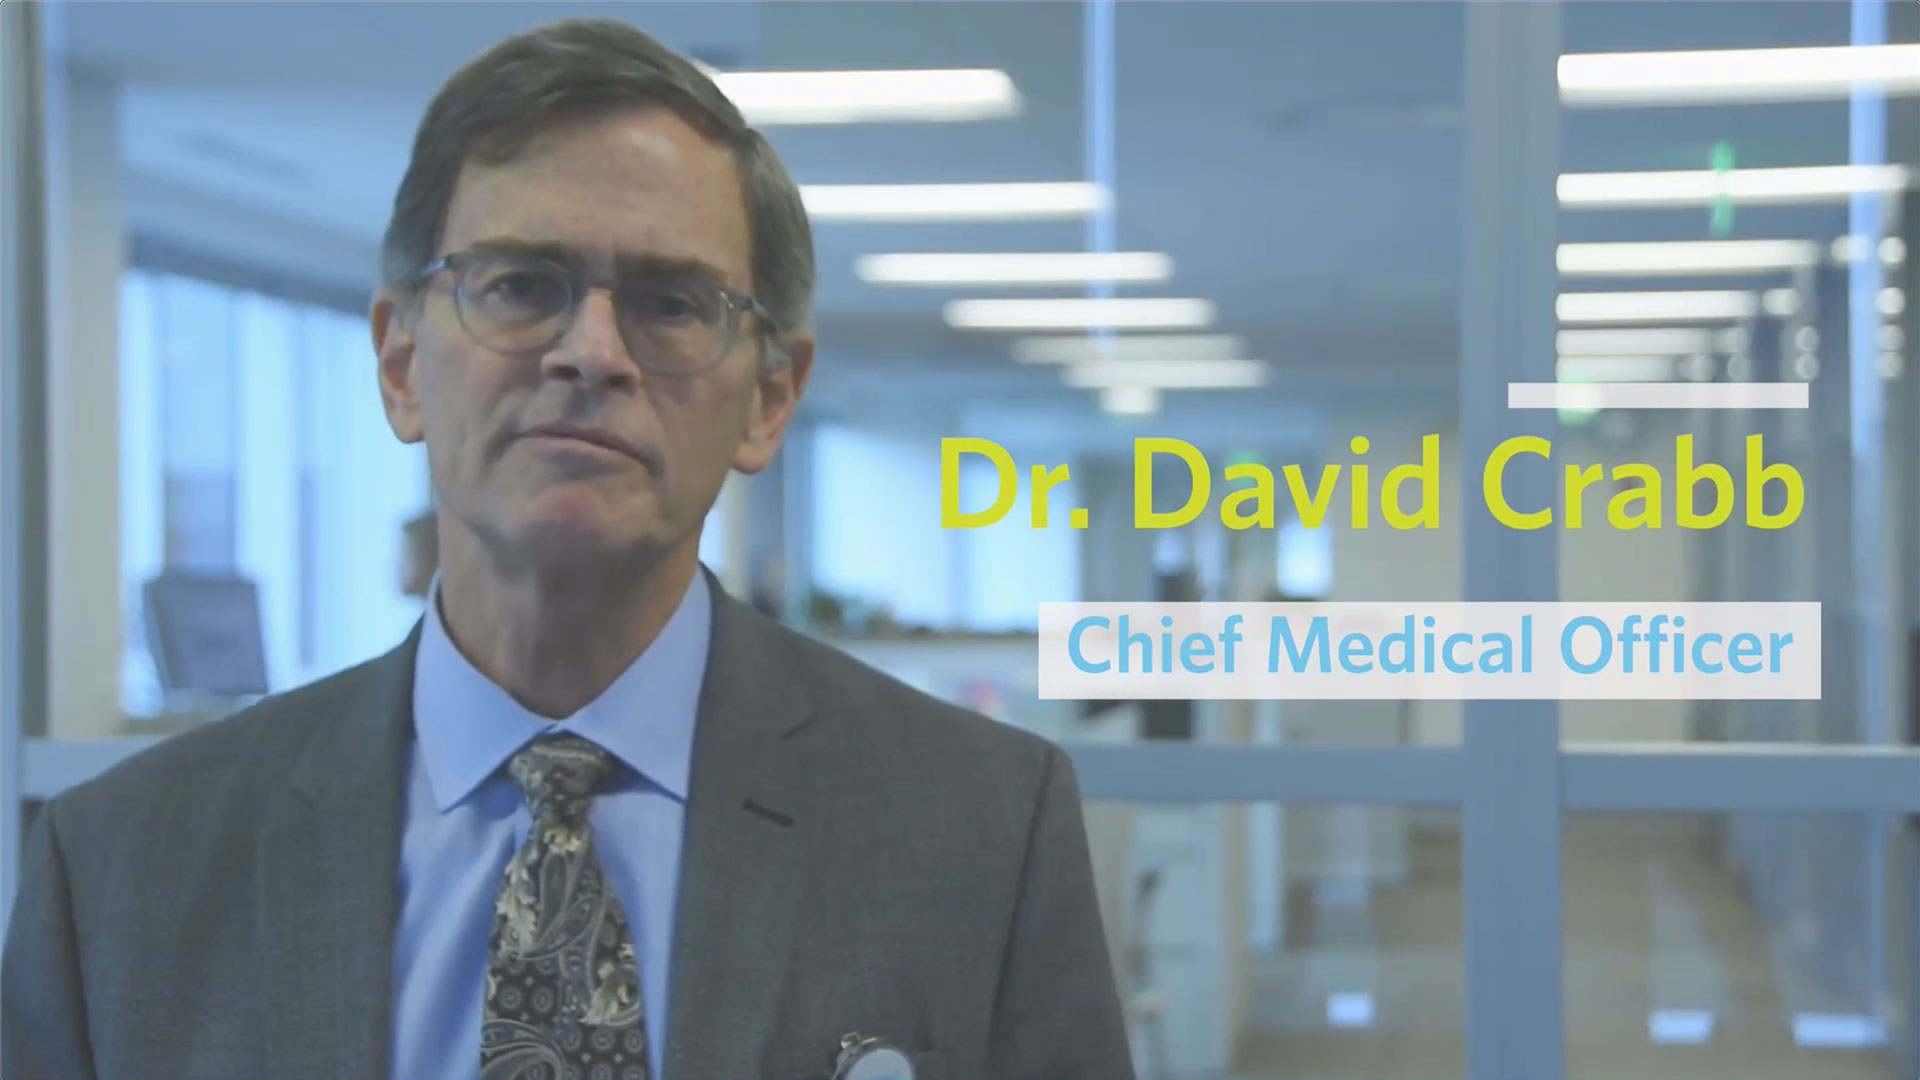 Dr. David Crabb